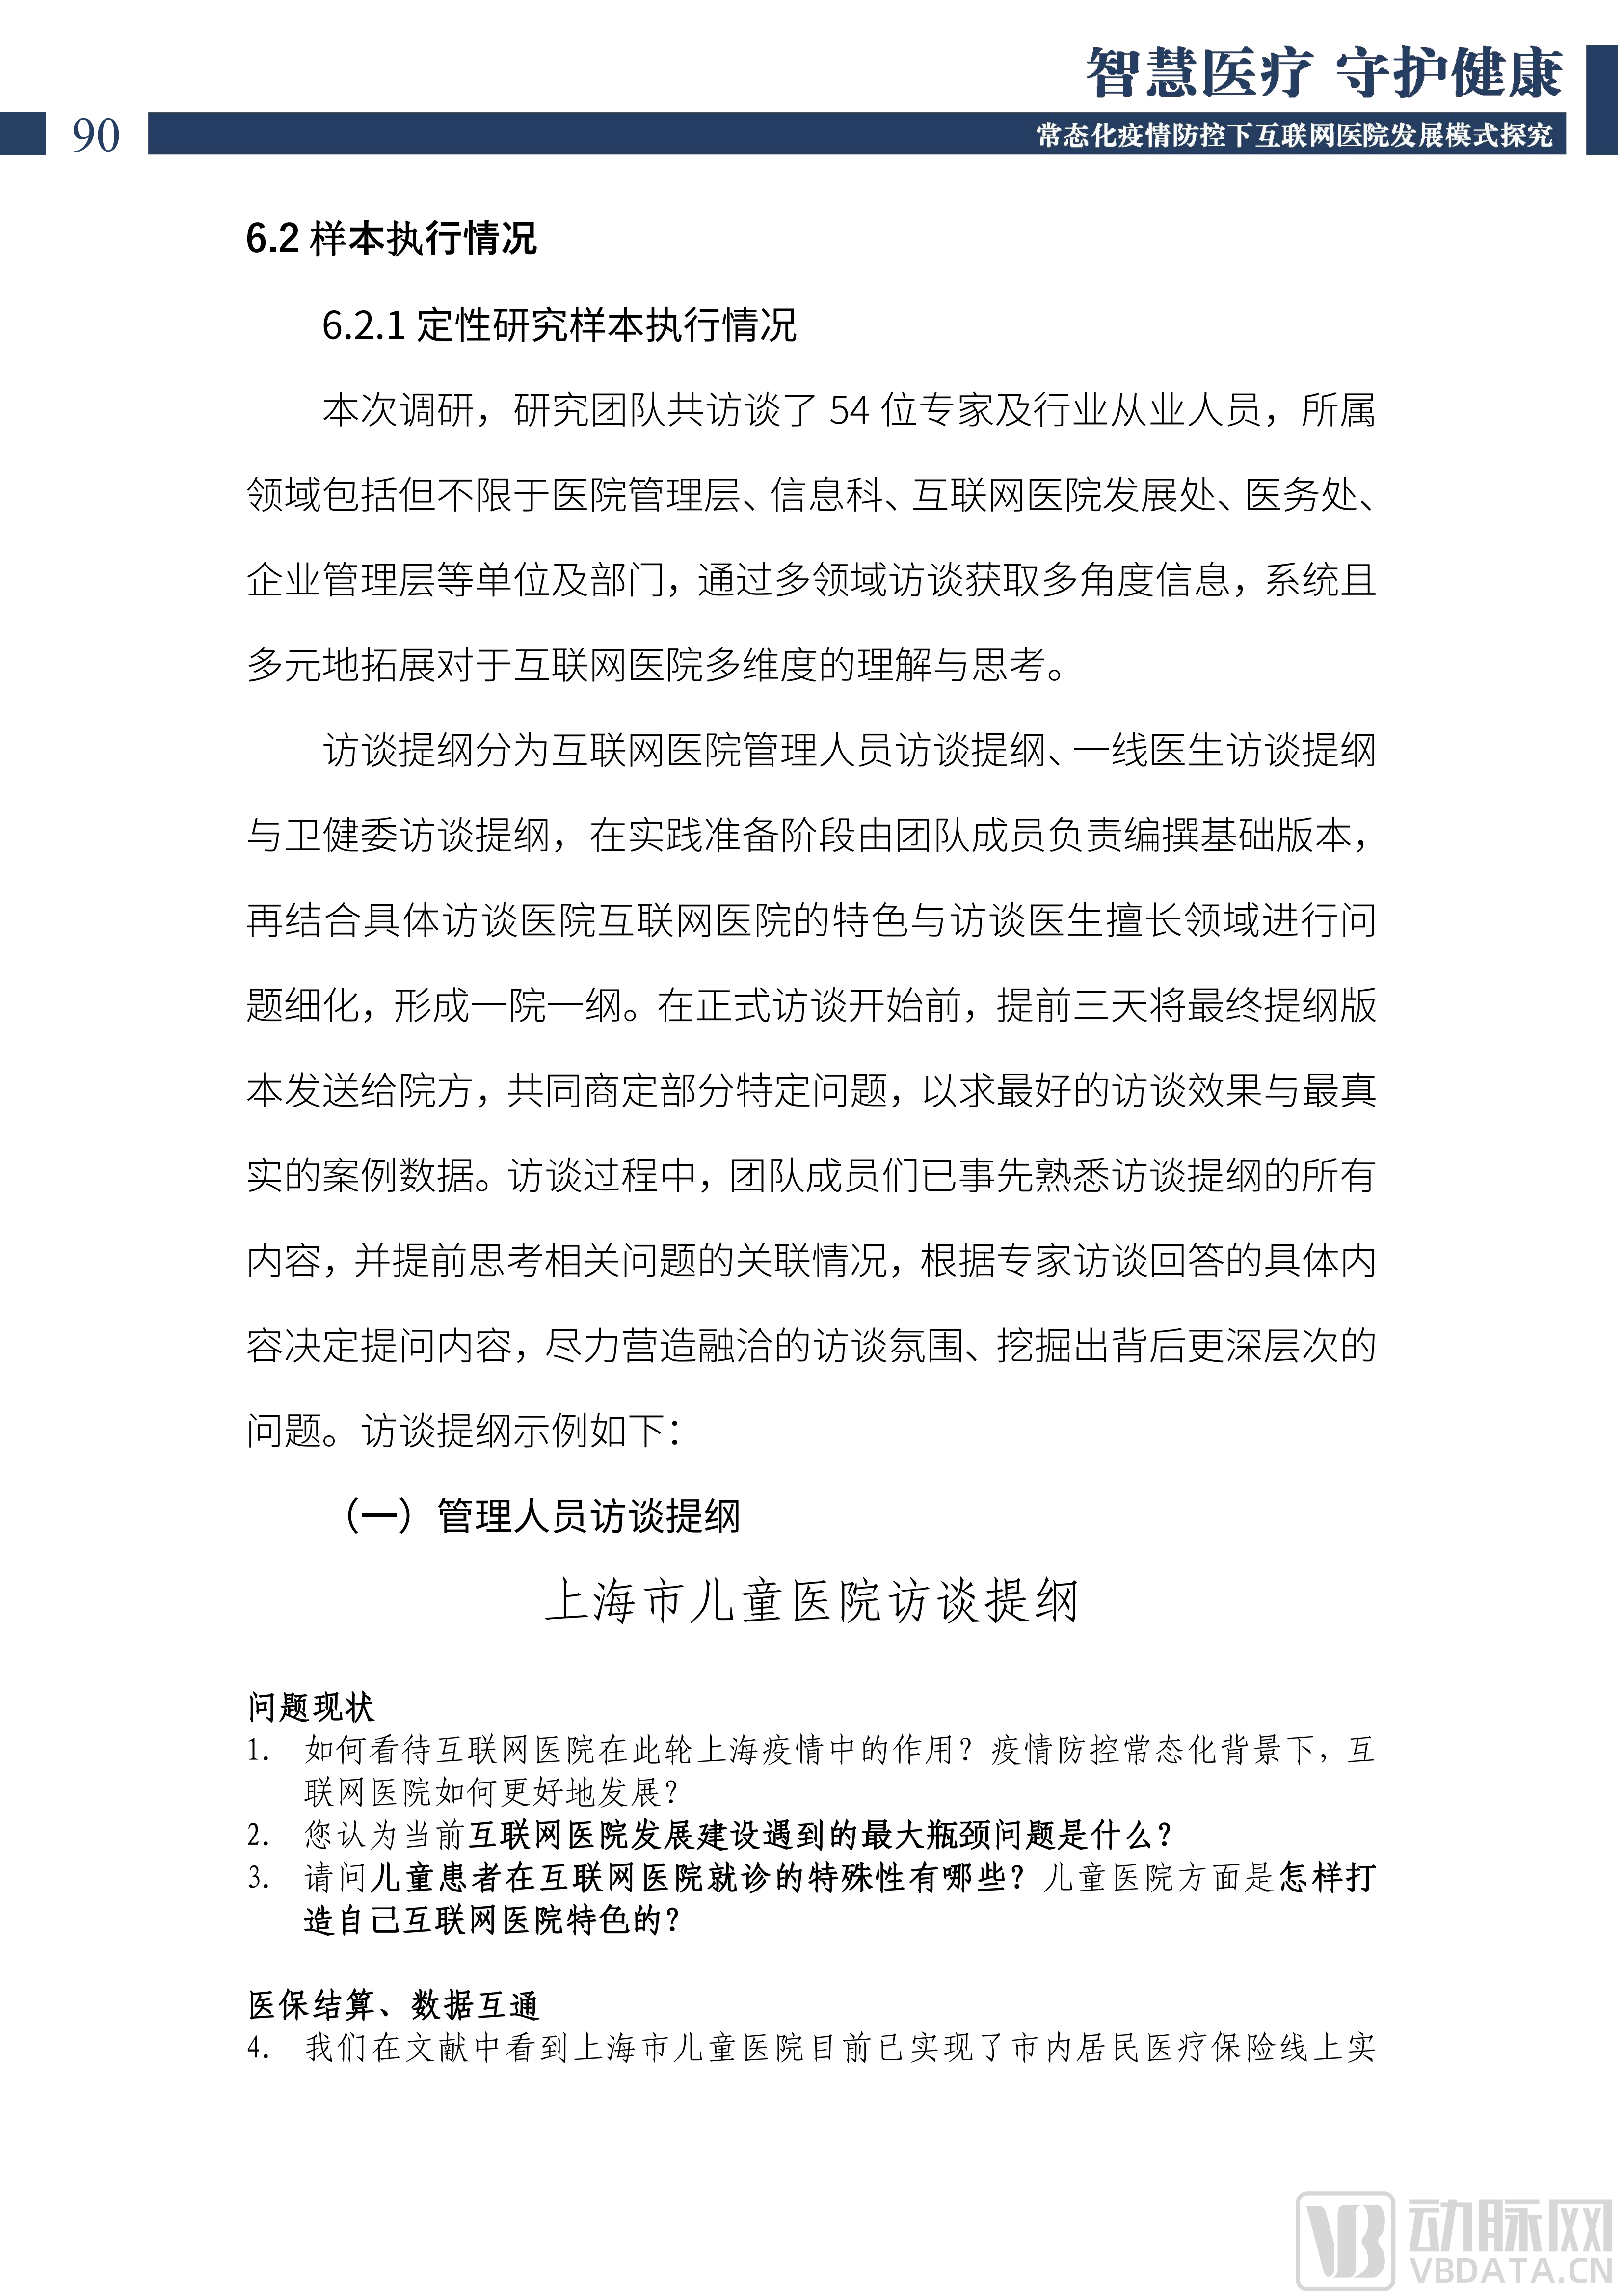 2022中国互联网医院发展调研报告(1)_91.png